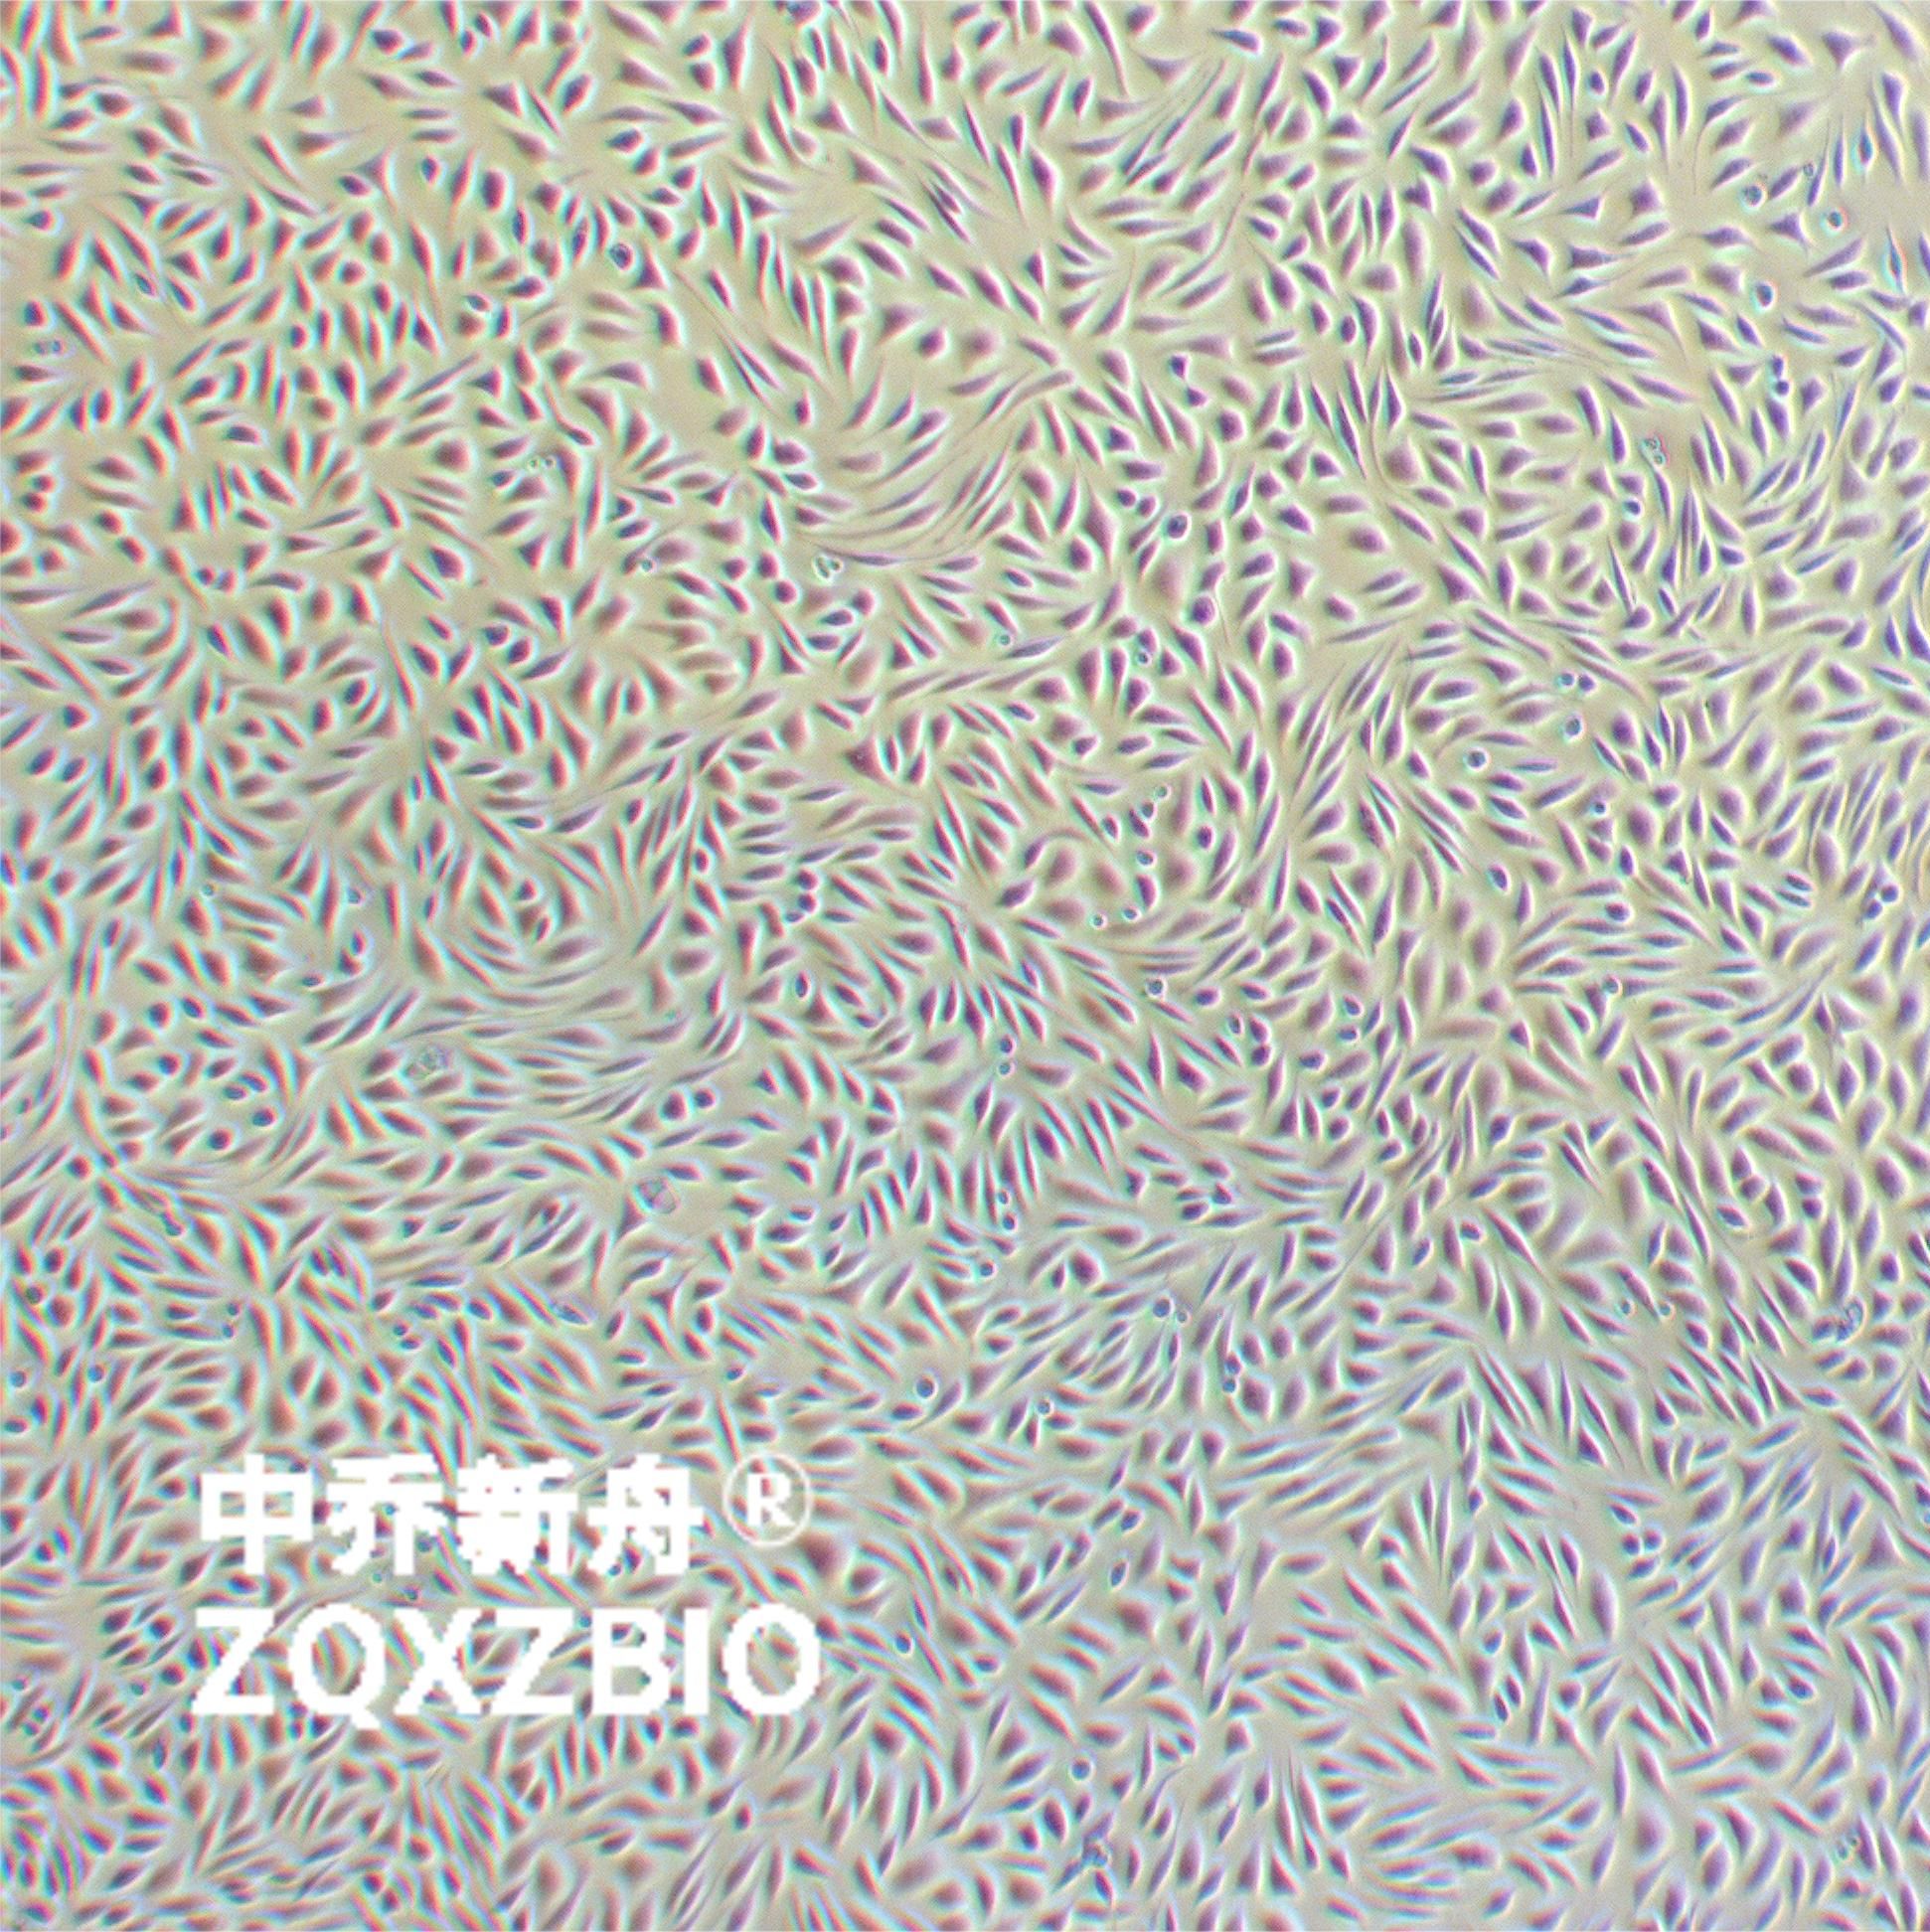 L-929小鼠胚胎成纤维细胞